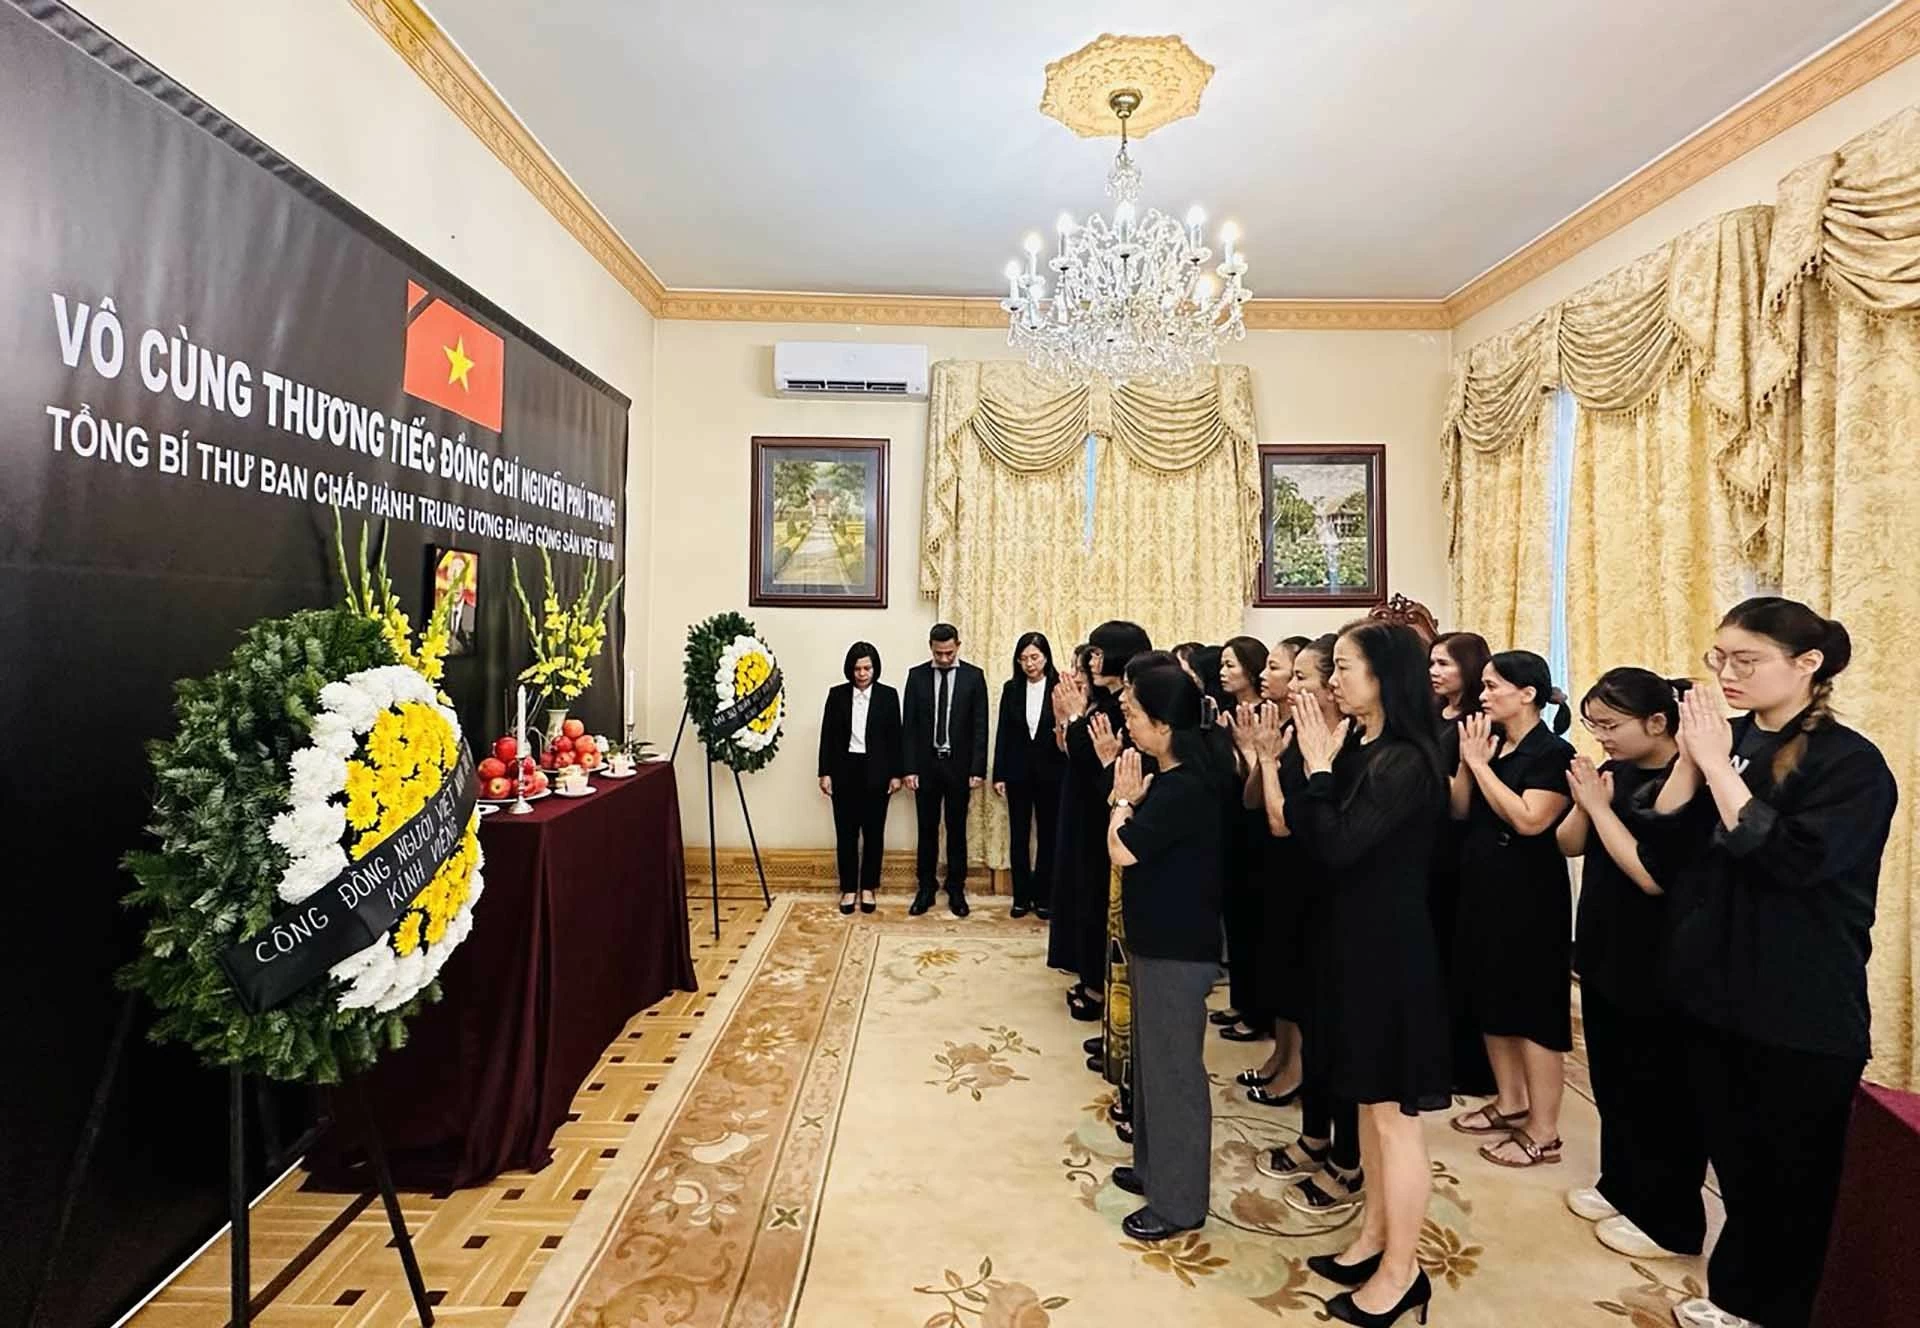 Di sản của Tổng Bí thư Nguyễn Phú Trọng sẽ truyền cảm hứng cho các thế hệ tương lai